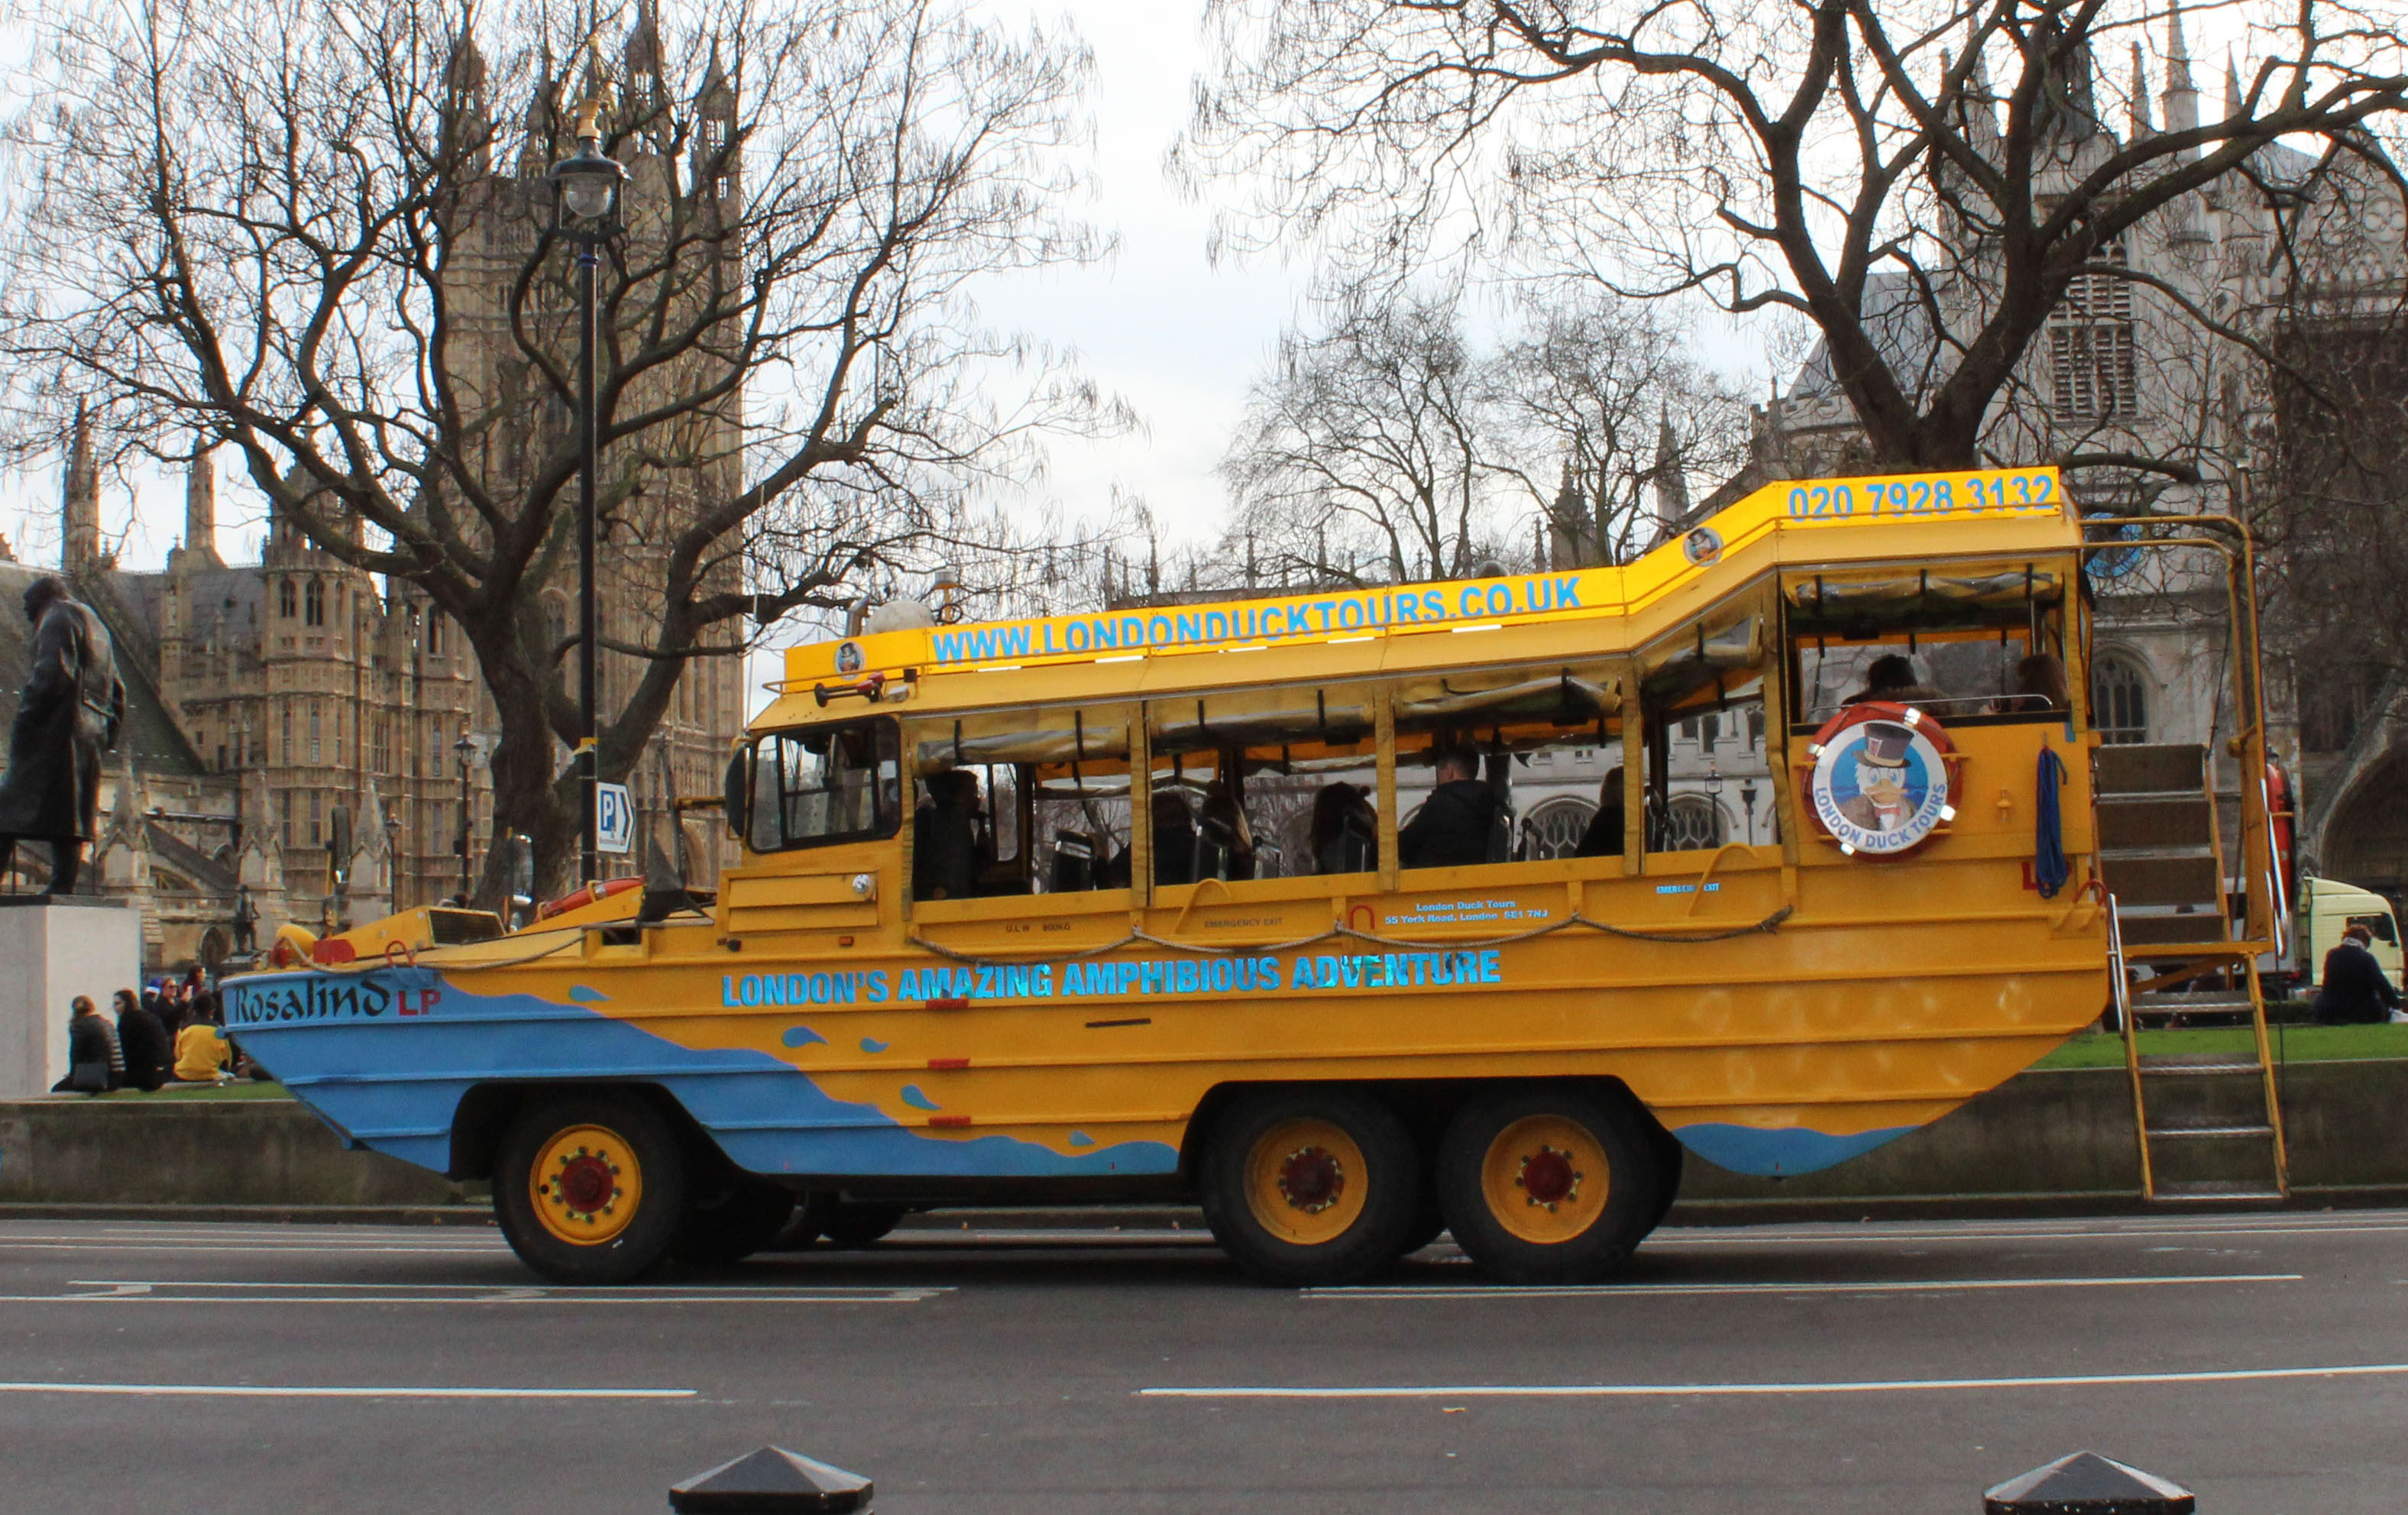 london duck tours services